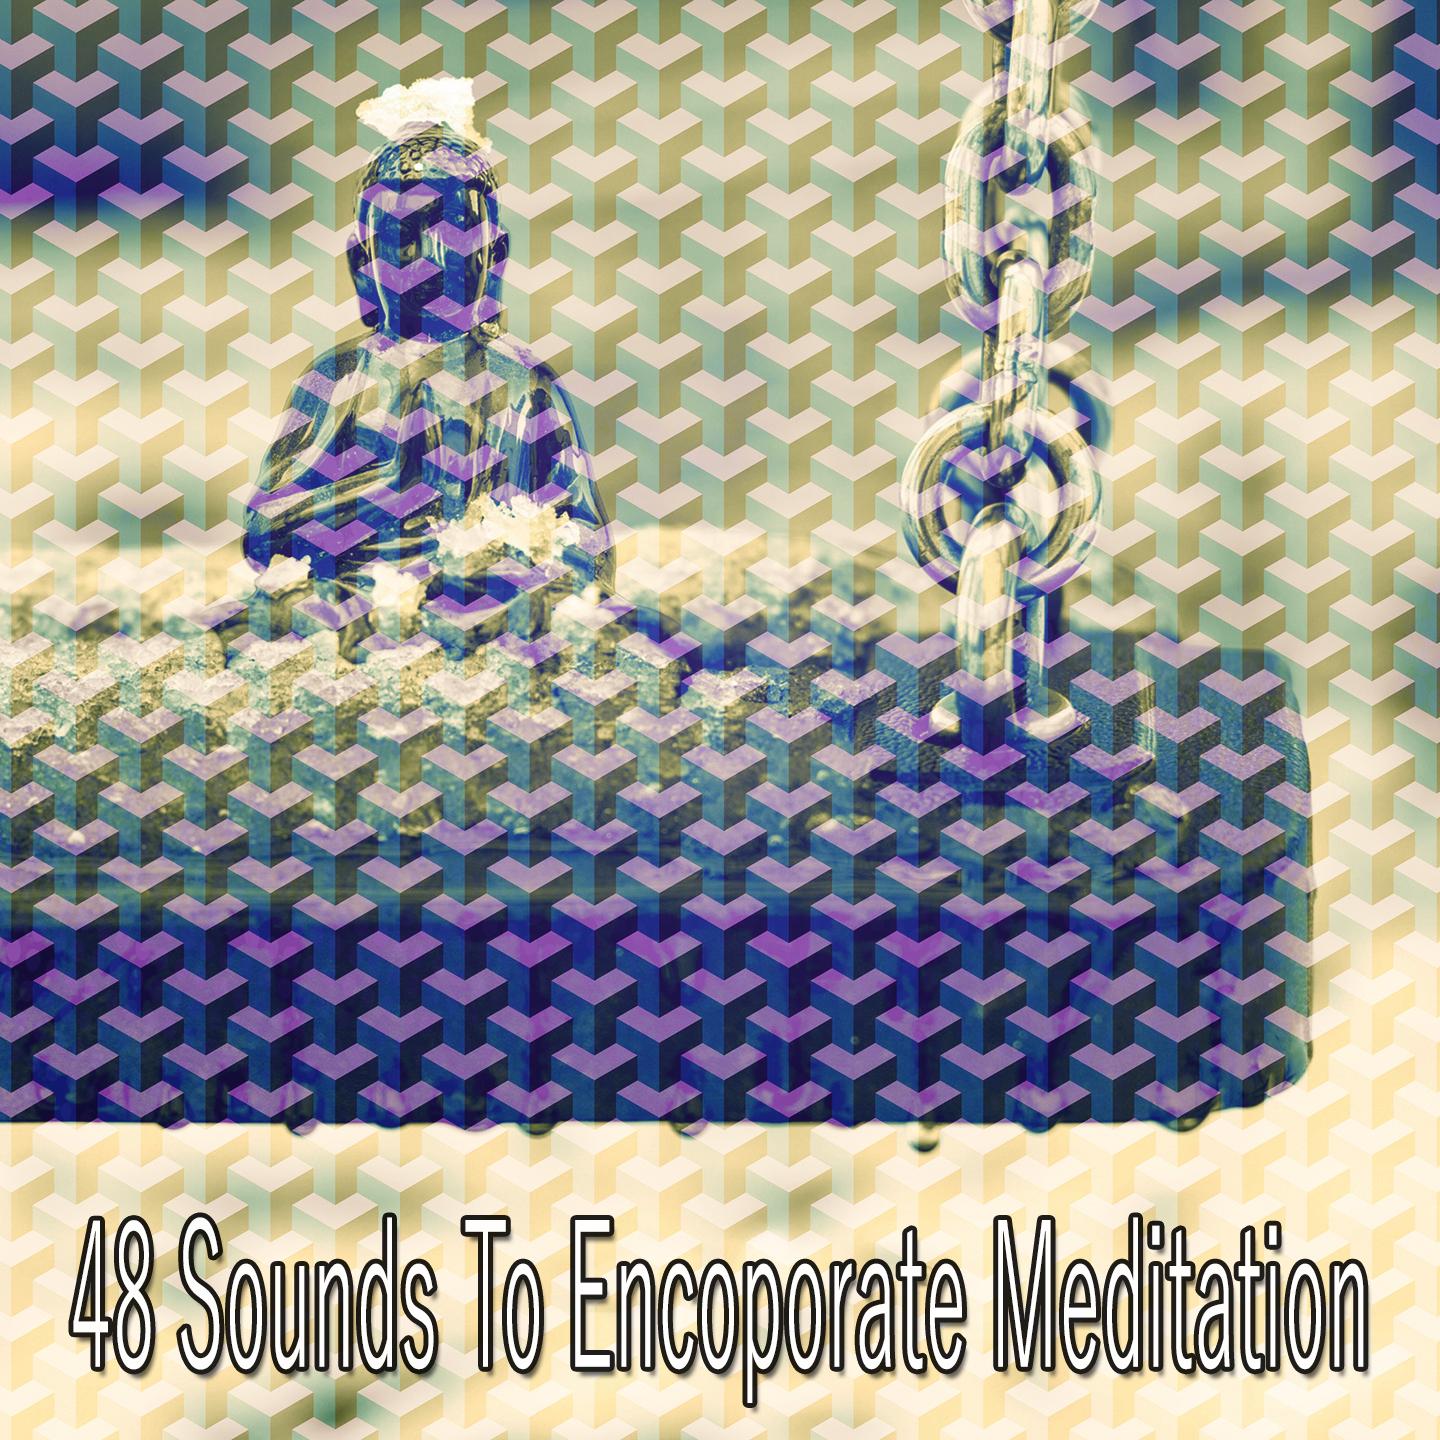 48 Sounds to Encoporate Meditation